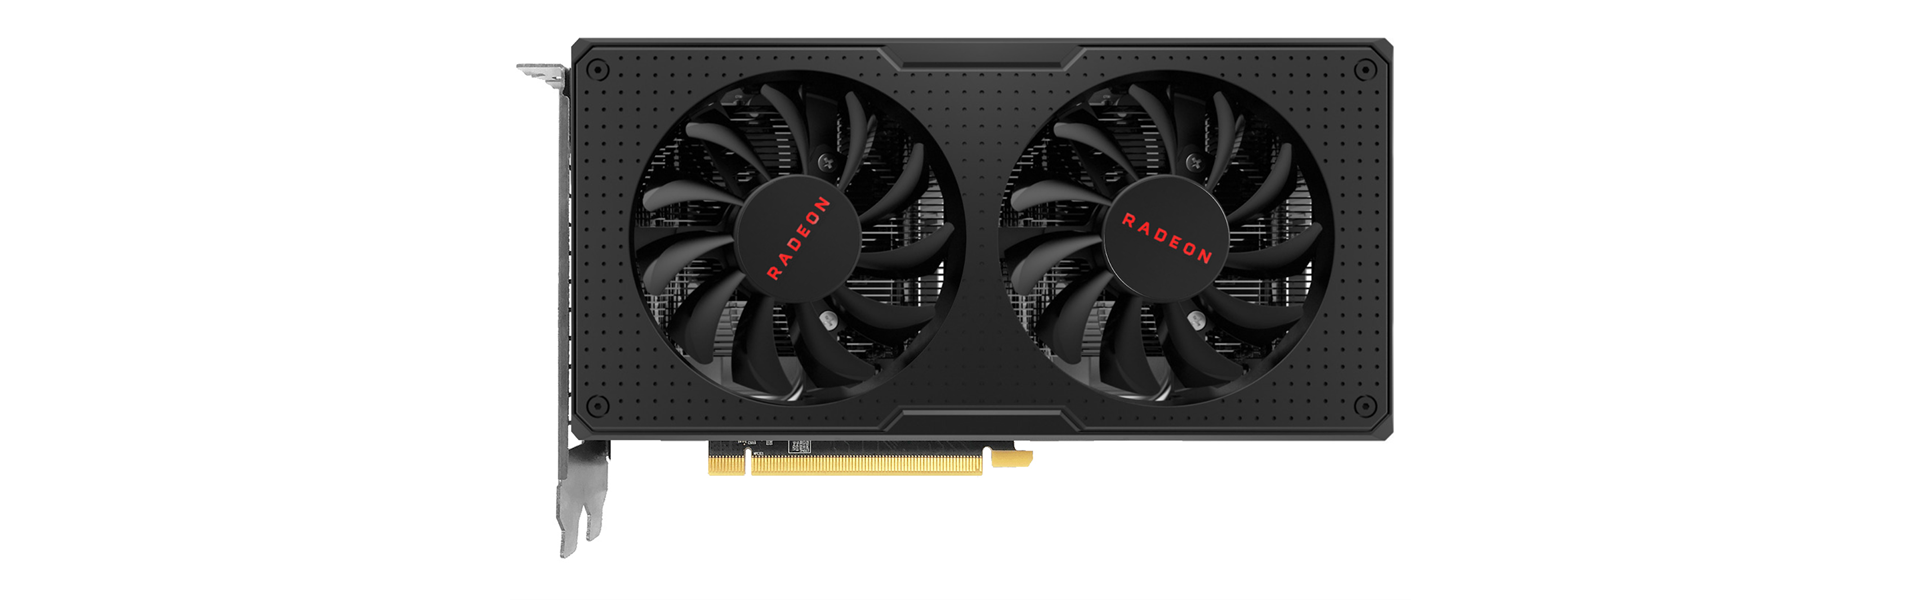 Майнинг на AMD Radeon RX 560. Актуальность видеокарты на осень 2022 года